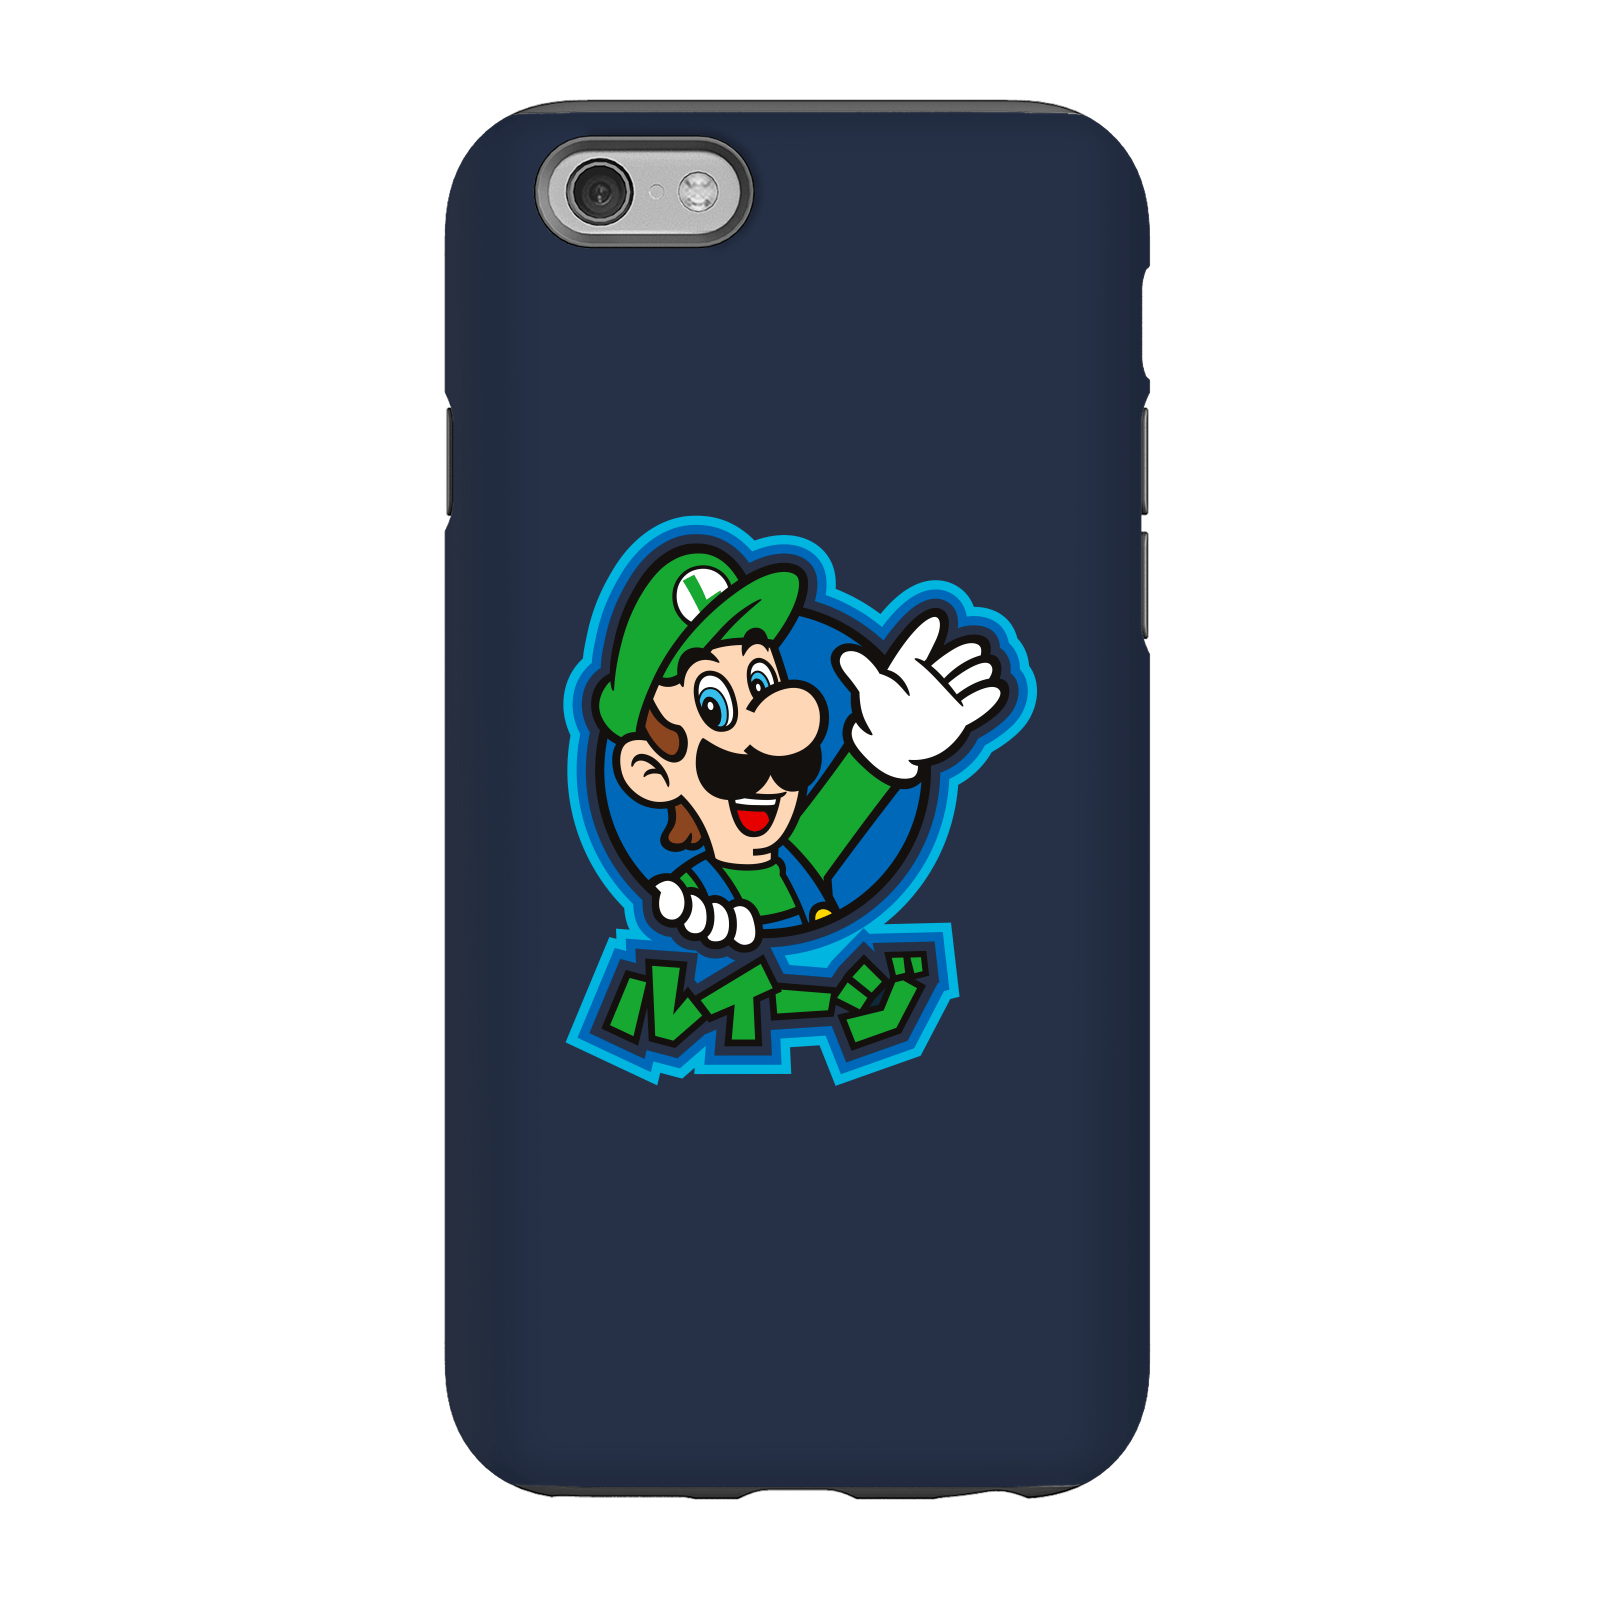 Nintendo Super Mario Luigi Kanji Phone Case - iPhone 6 - Tough Case - Gloss